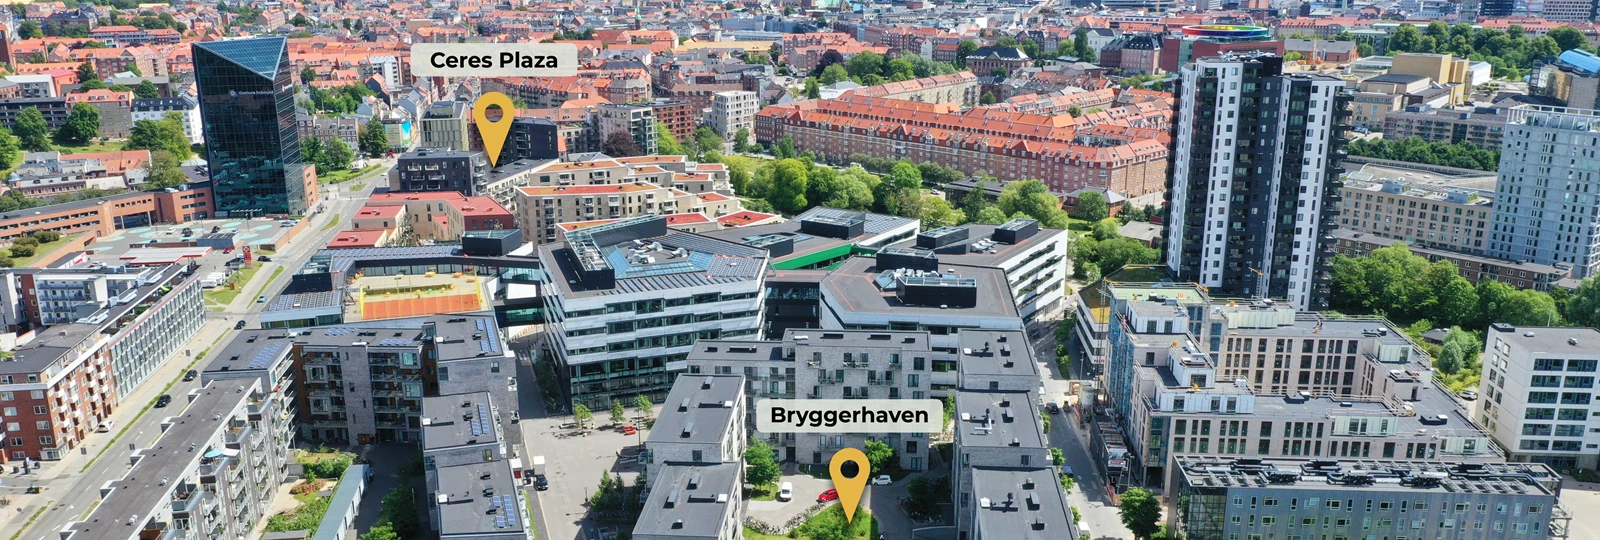 Lejeboligmægleren overtager genudlejningen af Bryggerhaven og Ceres Plaza i Aarhus